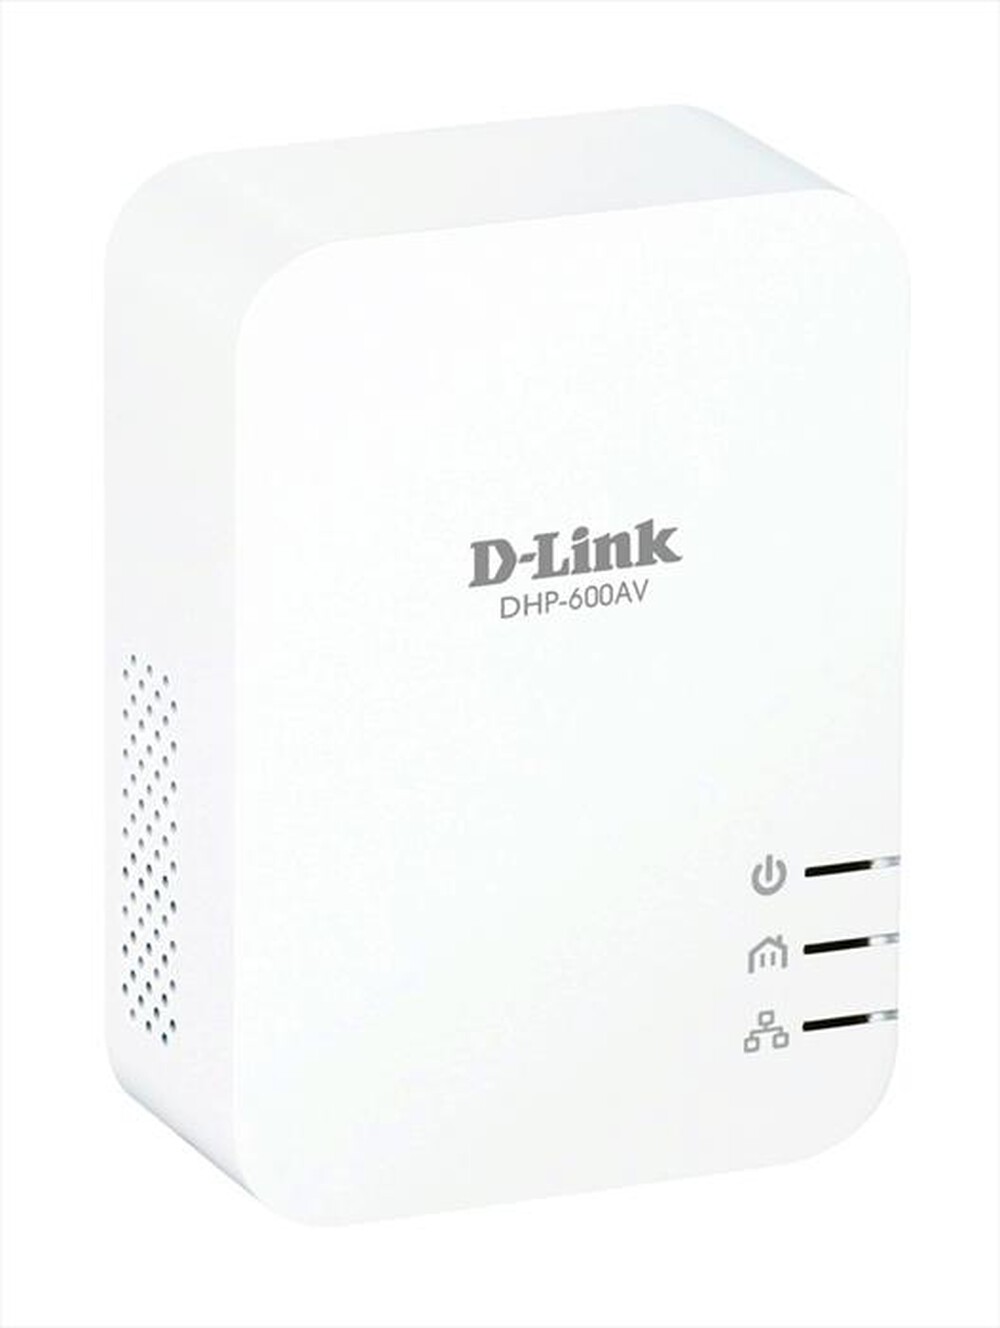 "D-LINK - DHP-601AV PowerLine Kit AV600 Gigabit"